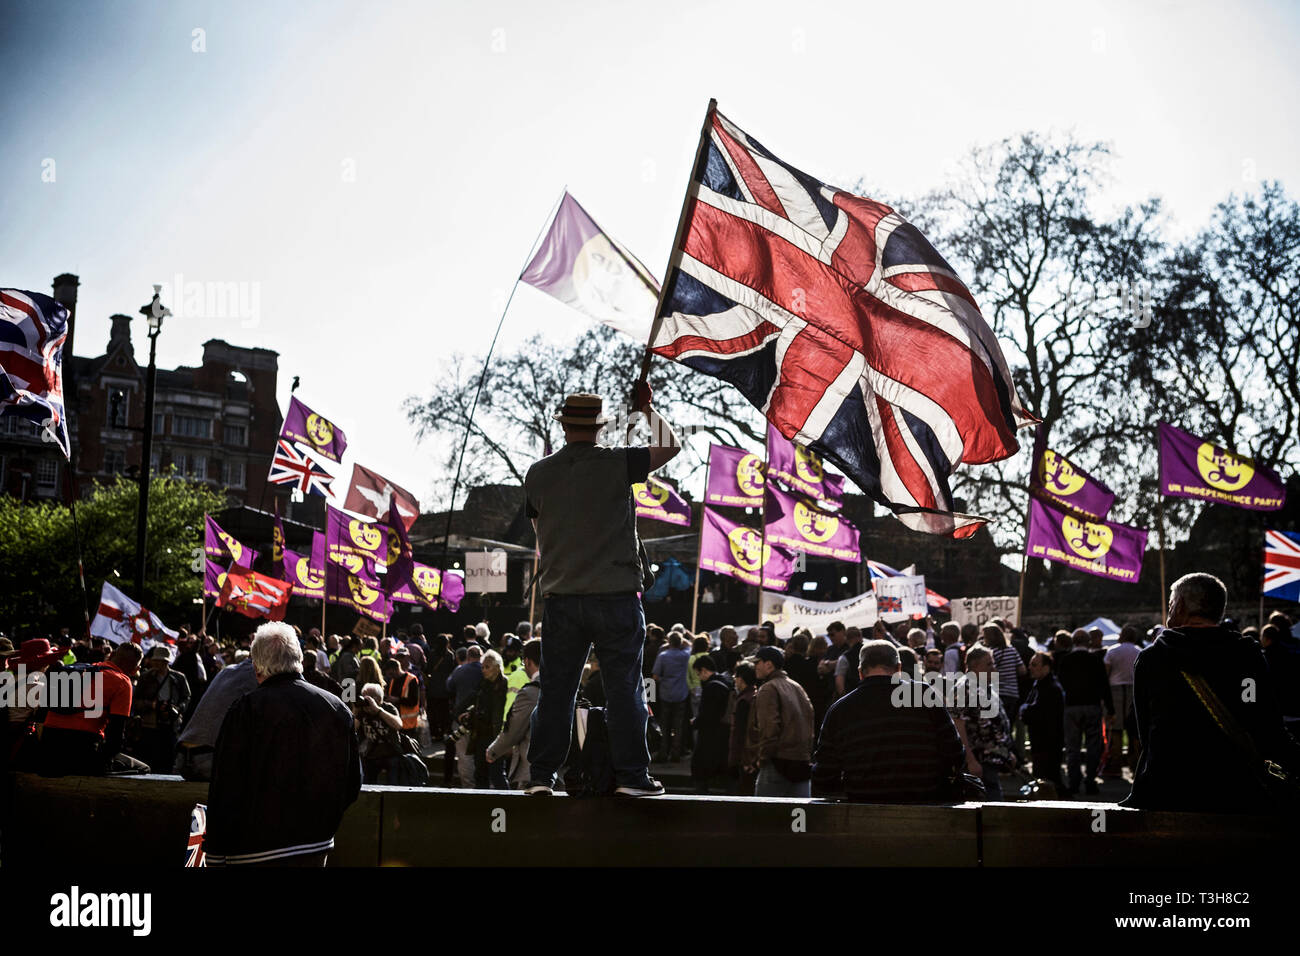 Politische Kundgebung großbritannien/Politik großbritannien/politischer Protest – Protestler mit einer Flagge auf einer friedlichen kundgebung im märz für den Brexit im Jahr 2019. Britishness. Patriotismus. Stockfoto